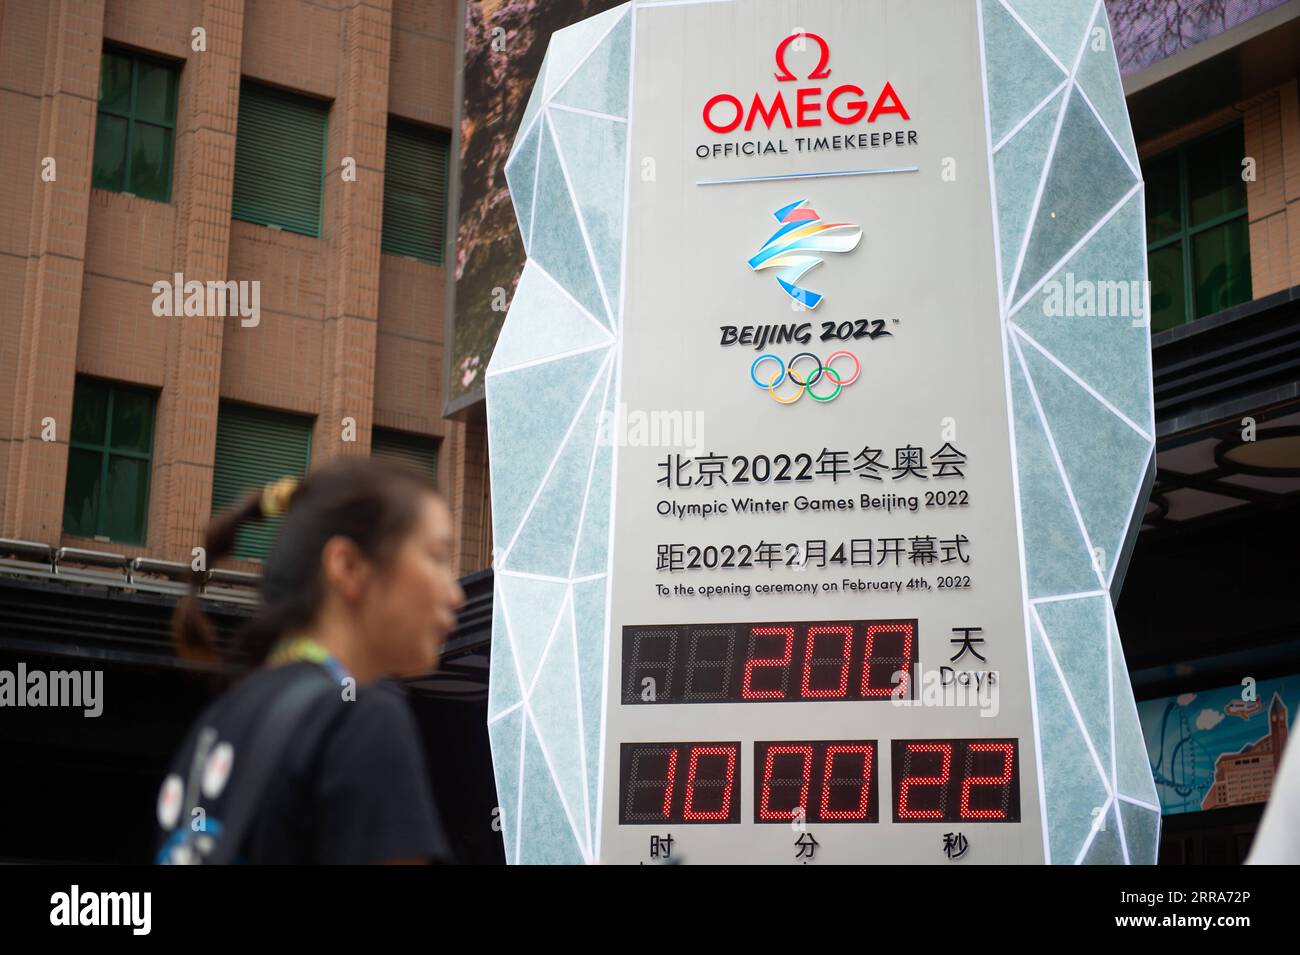 210719 -- BEIJING, 19 juillet 2021 -- la photo prise le 19 juillet 2021 montre l'écran géant de la tour Linglong montrant 200 jours de compte à rebours avant la cérémonie d'ouverture des Jeux Olympiques d'hiver de 2022 à Beijing, capitale de la Chine. SPCHINA-BEIJING-OLY-BEIJING 2022-200 JOURS À PARCOURIR CN CHENXZHONGHAO PUBLICATIONXNOTXINXCHN Banque D'Images